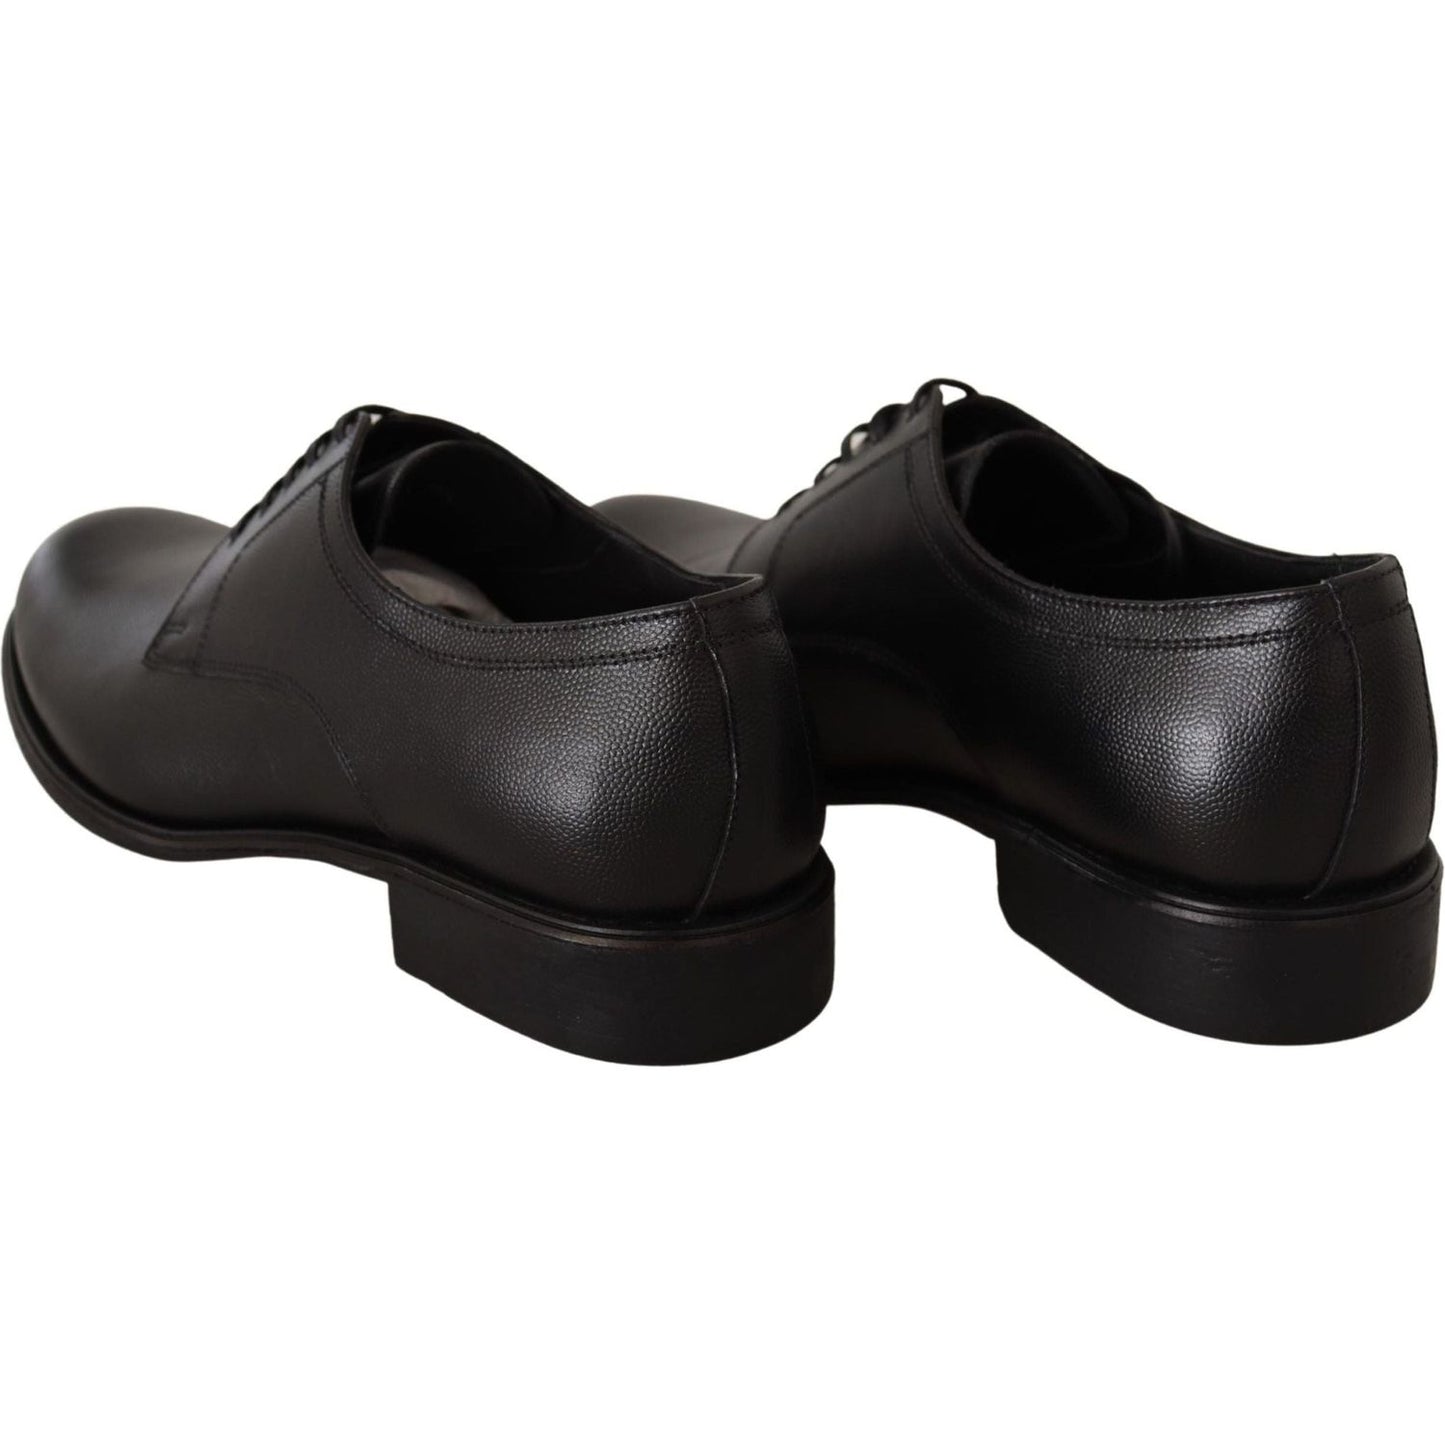 Dolce & Gabbana Elegant Black Leather Derby Shoes black-leather-lace-up-mens-formal-derby-shoes-1 IMG_4970-scaled-ed90f397-7ff.jpg